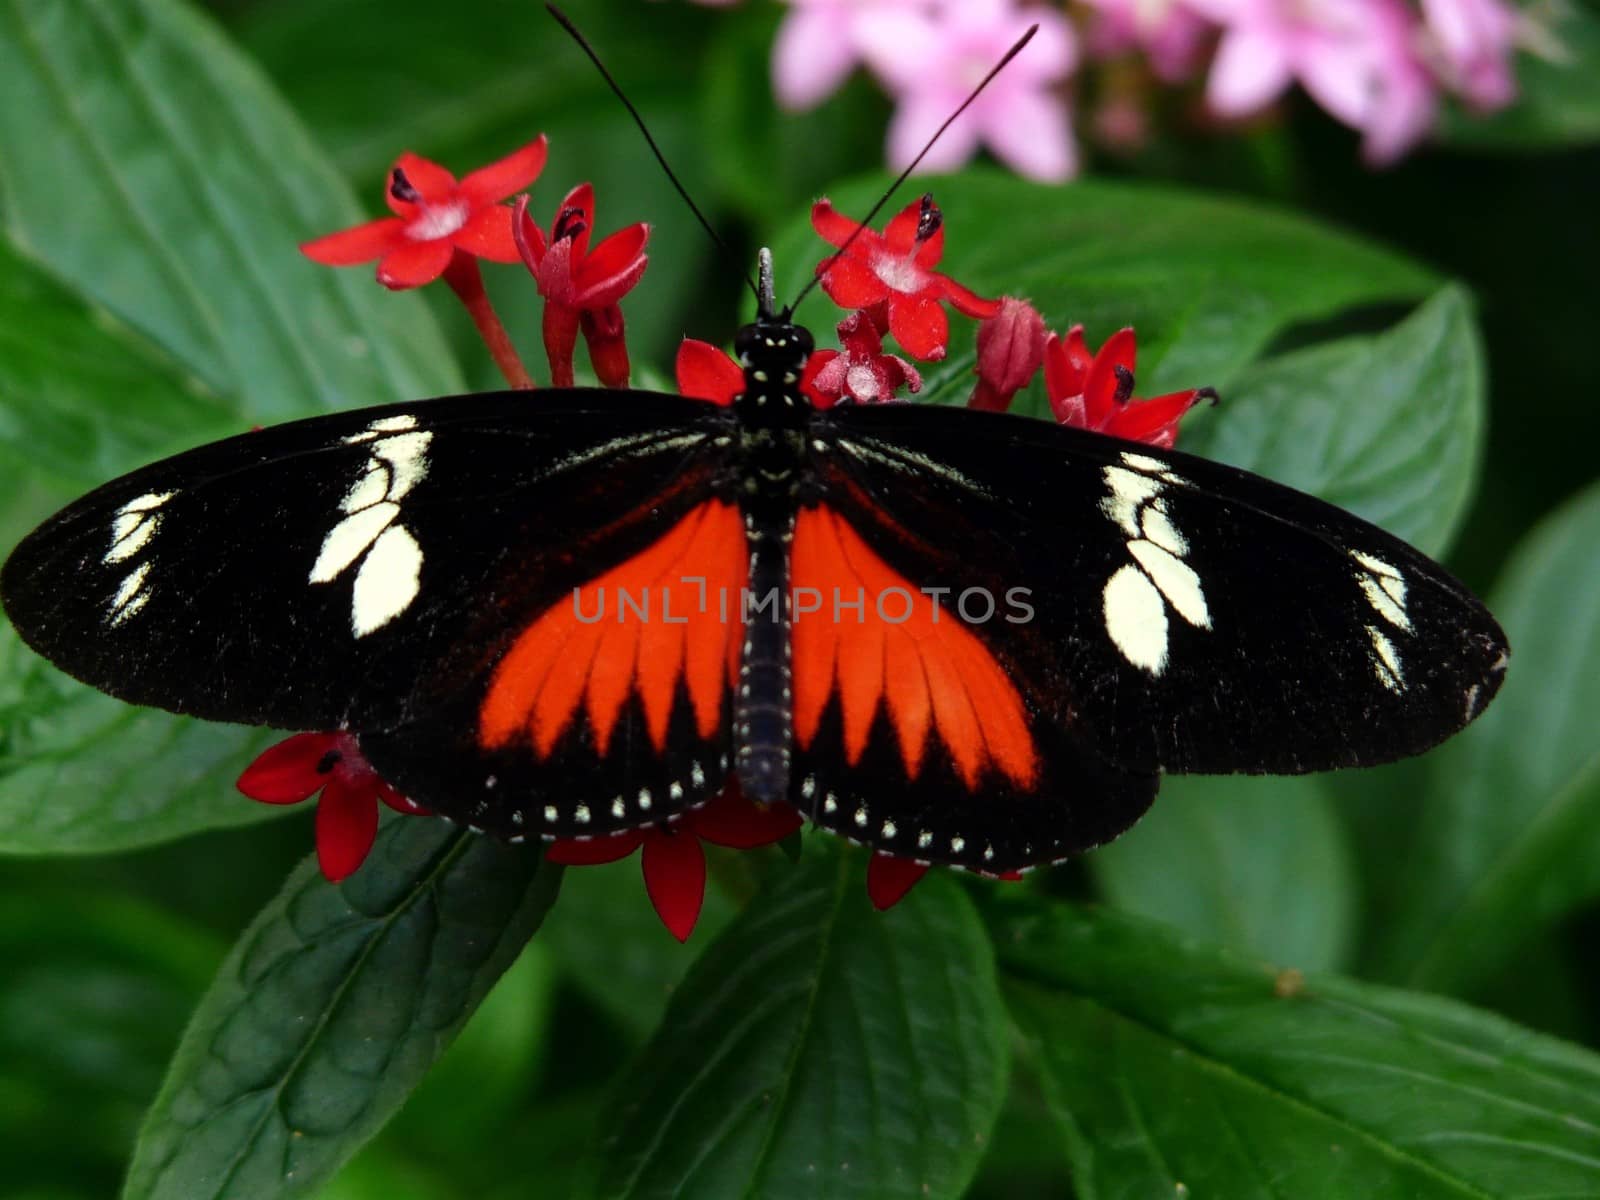 Doris Longwing Butterfly  Description: Doris Longwing Butterfly (Helic by nicousnake